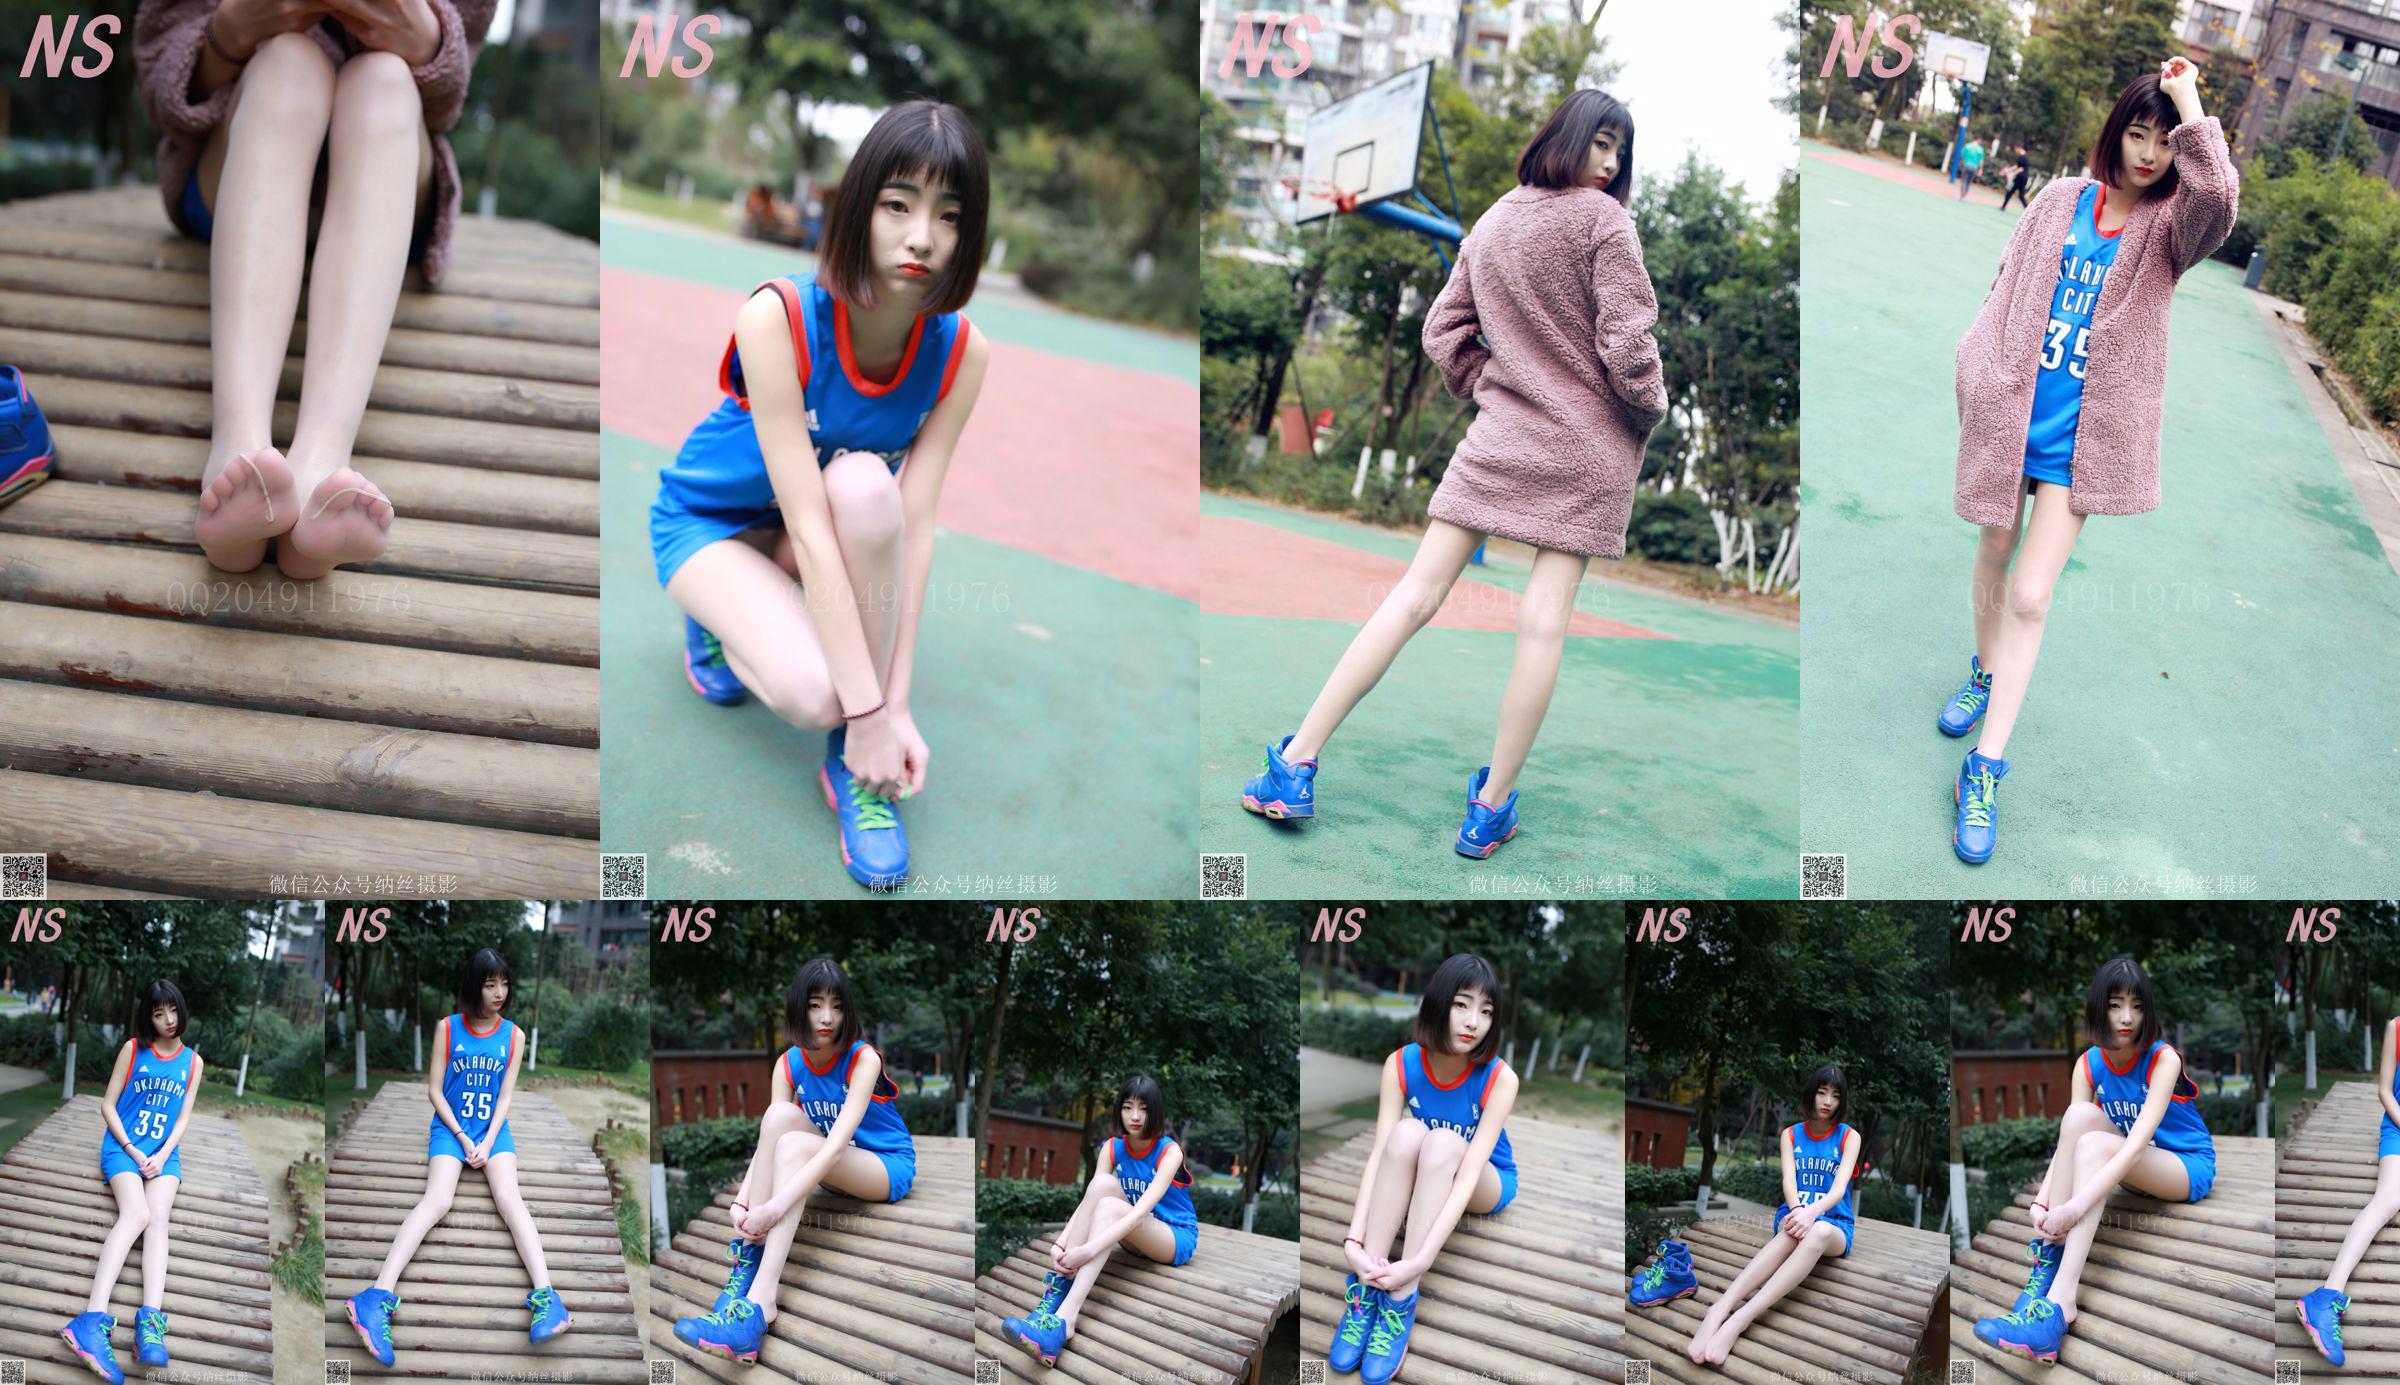 Chen Yujie "Basketball Girl" [Nasi Photography] SỐ 107 No.c68c8b Trang 1